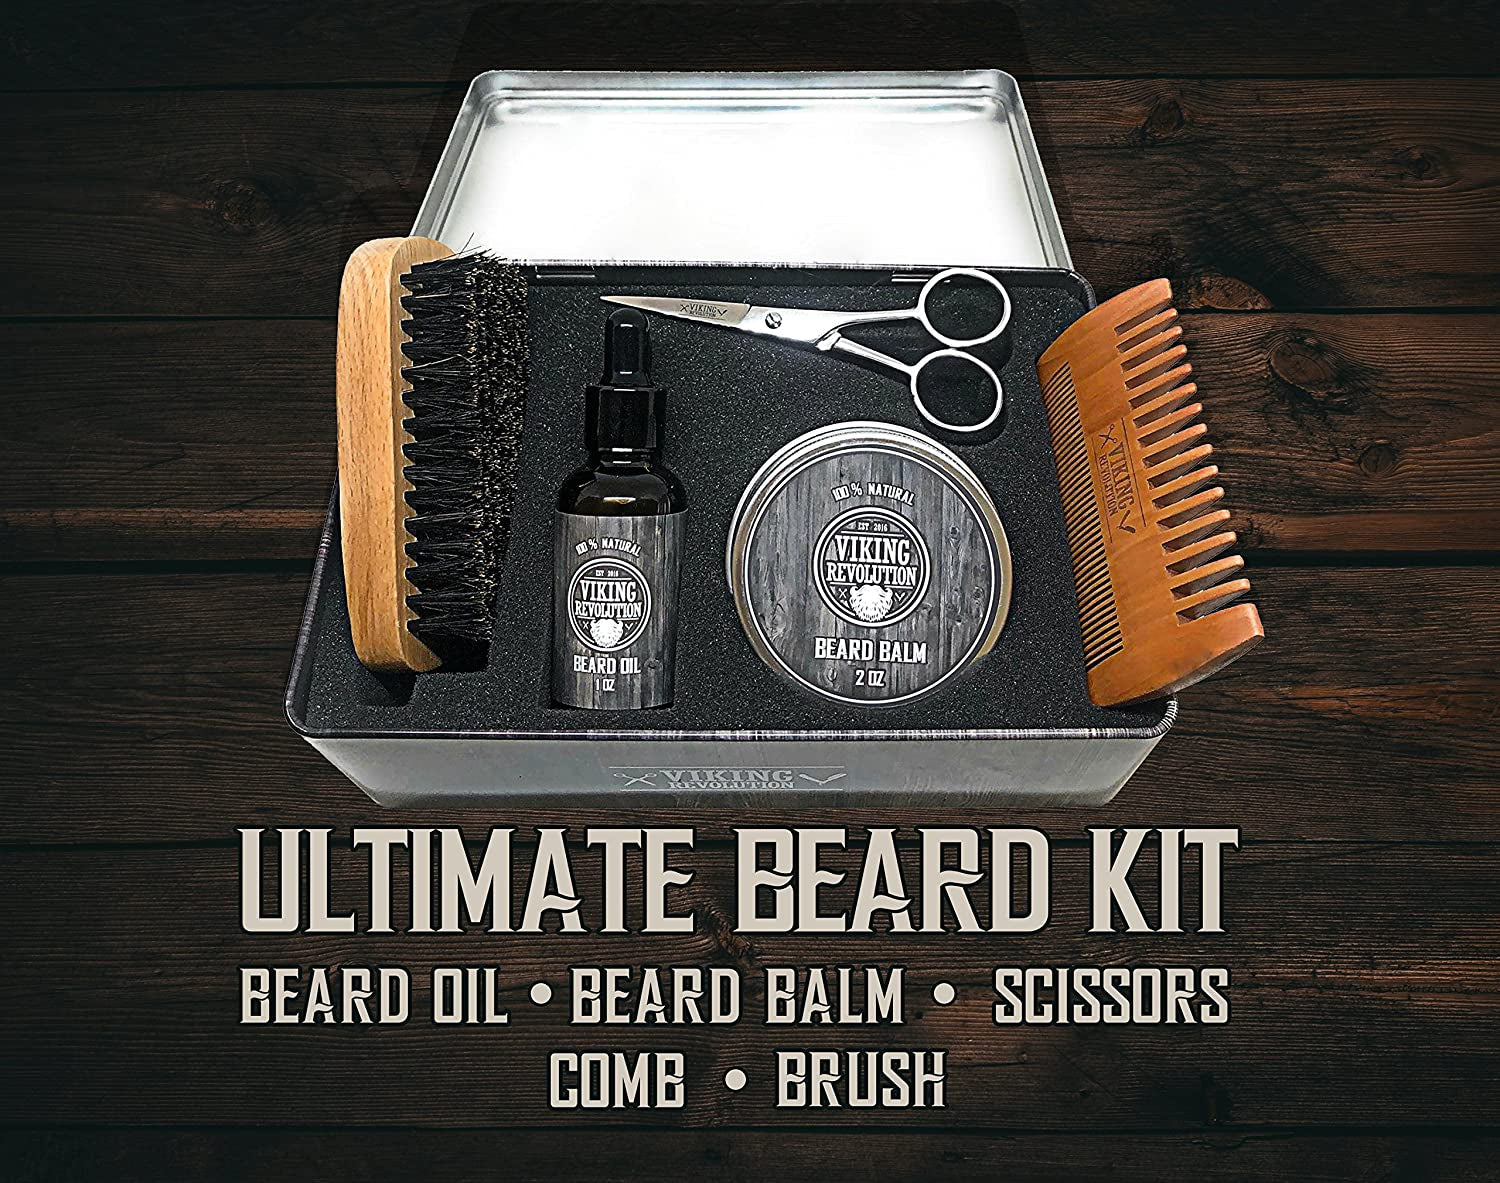 Beard Care Kit for Men - Ultimate Beard Grooming Kit Includes 100% Boar Men’S Beard Brush, Wooden Beard Comb, Beard Balm, Beard Oil, Beard & Mustache Scissors in a Metal Box